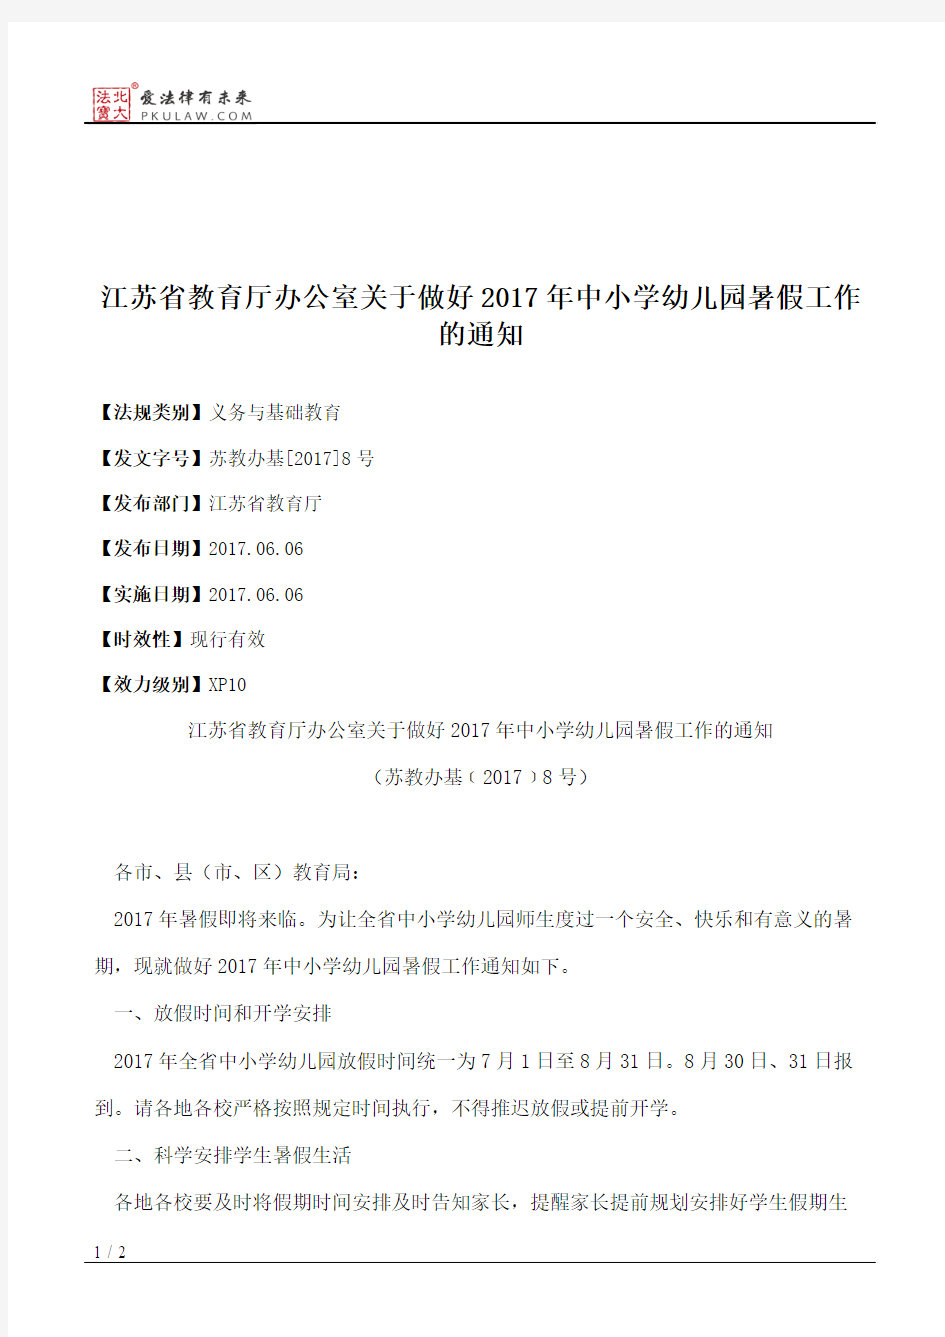 江苏省教育厅办公室关于做好2017年中小学幼儿园暑假工作的通知